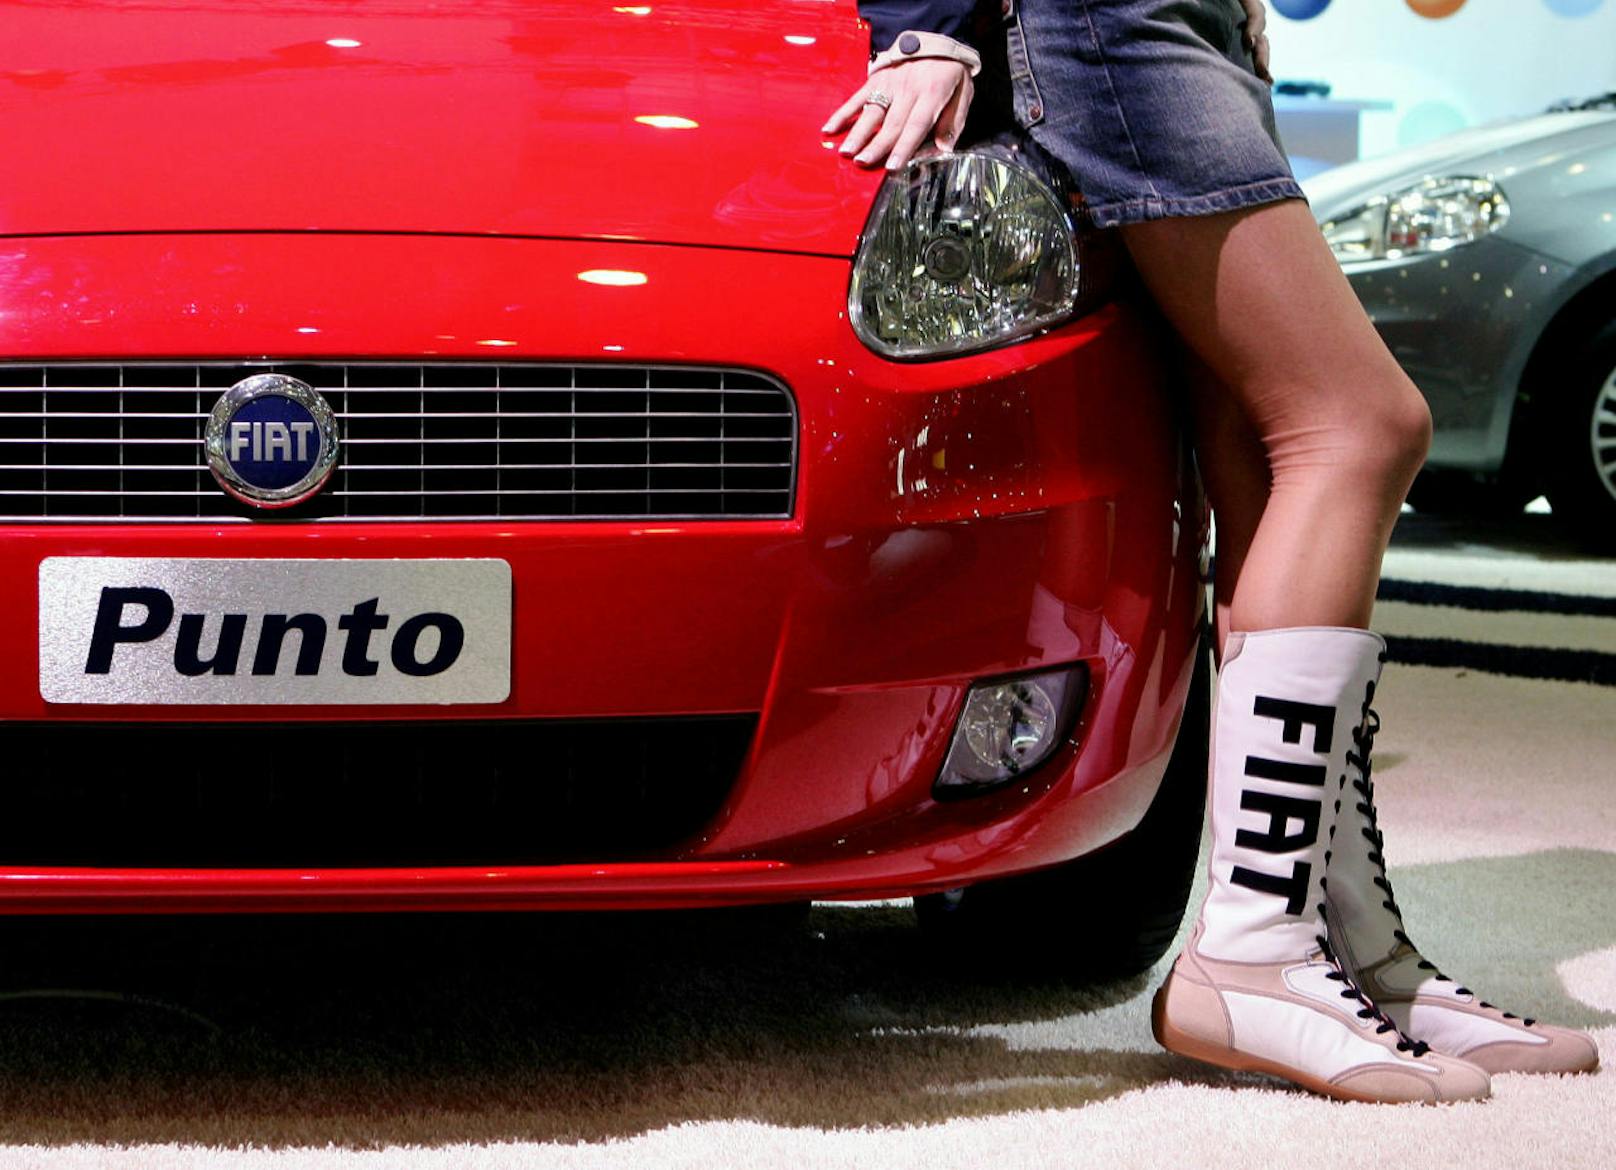 Der Fiat Punto wird nach 25 Jahren eingestellt. Er war eines der erfolgreichsten Fiat-Modelle.